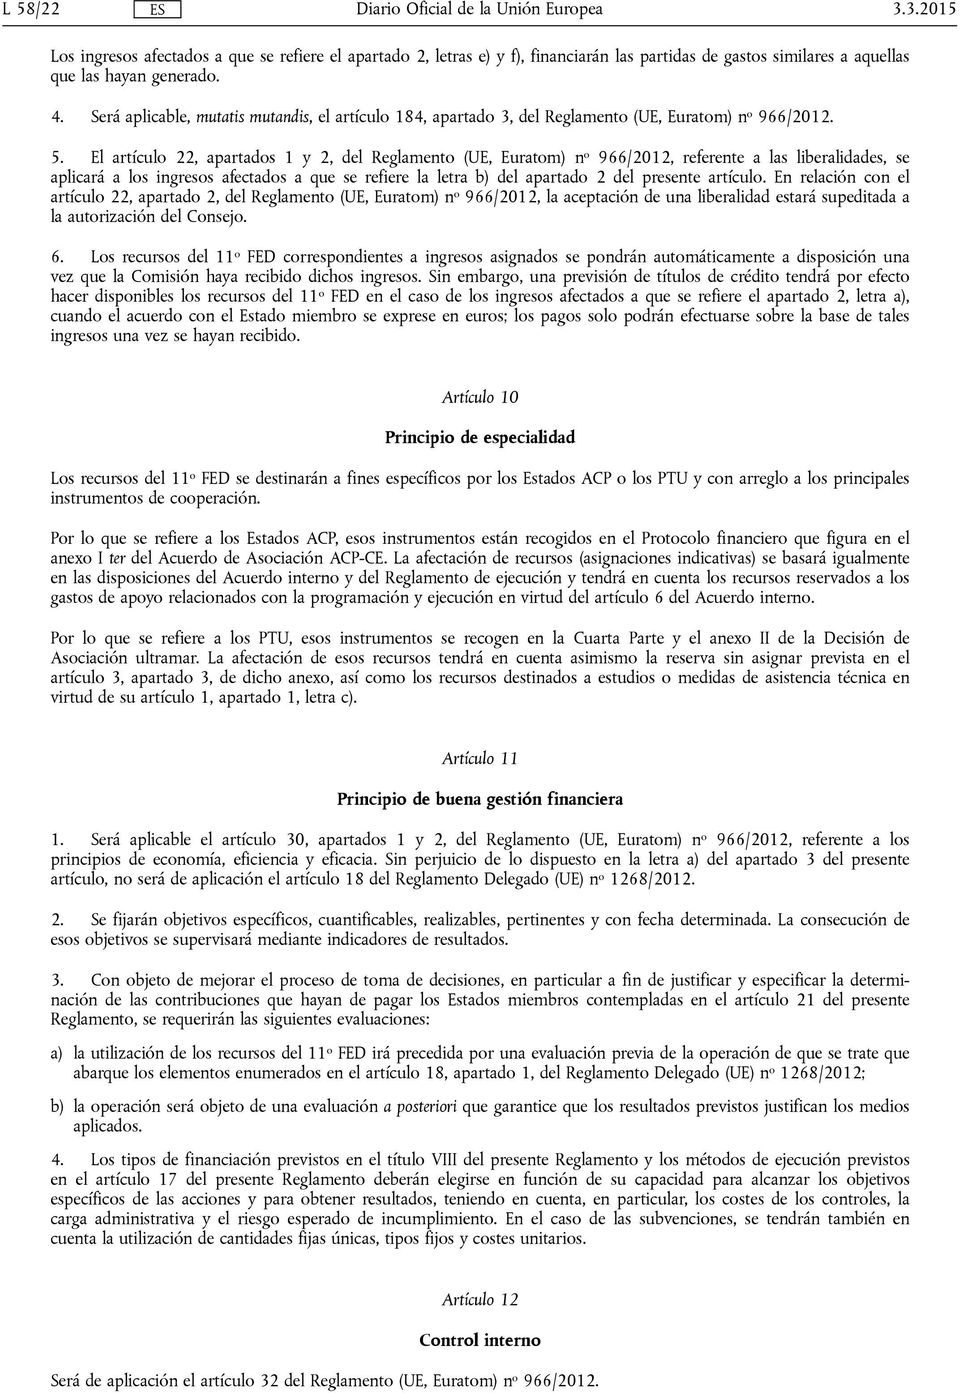 El artículo 22, apartados 1 y 2, del Reglamento (UE, Euratom) n o 966/2012, referente a las liberalidades, se aplicará a los ingresos afectados a que se refiere la letra b) del apartado 2 del